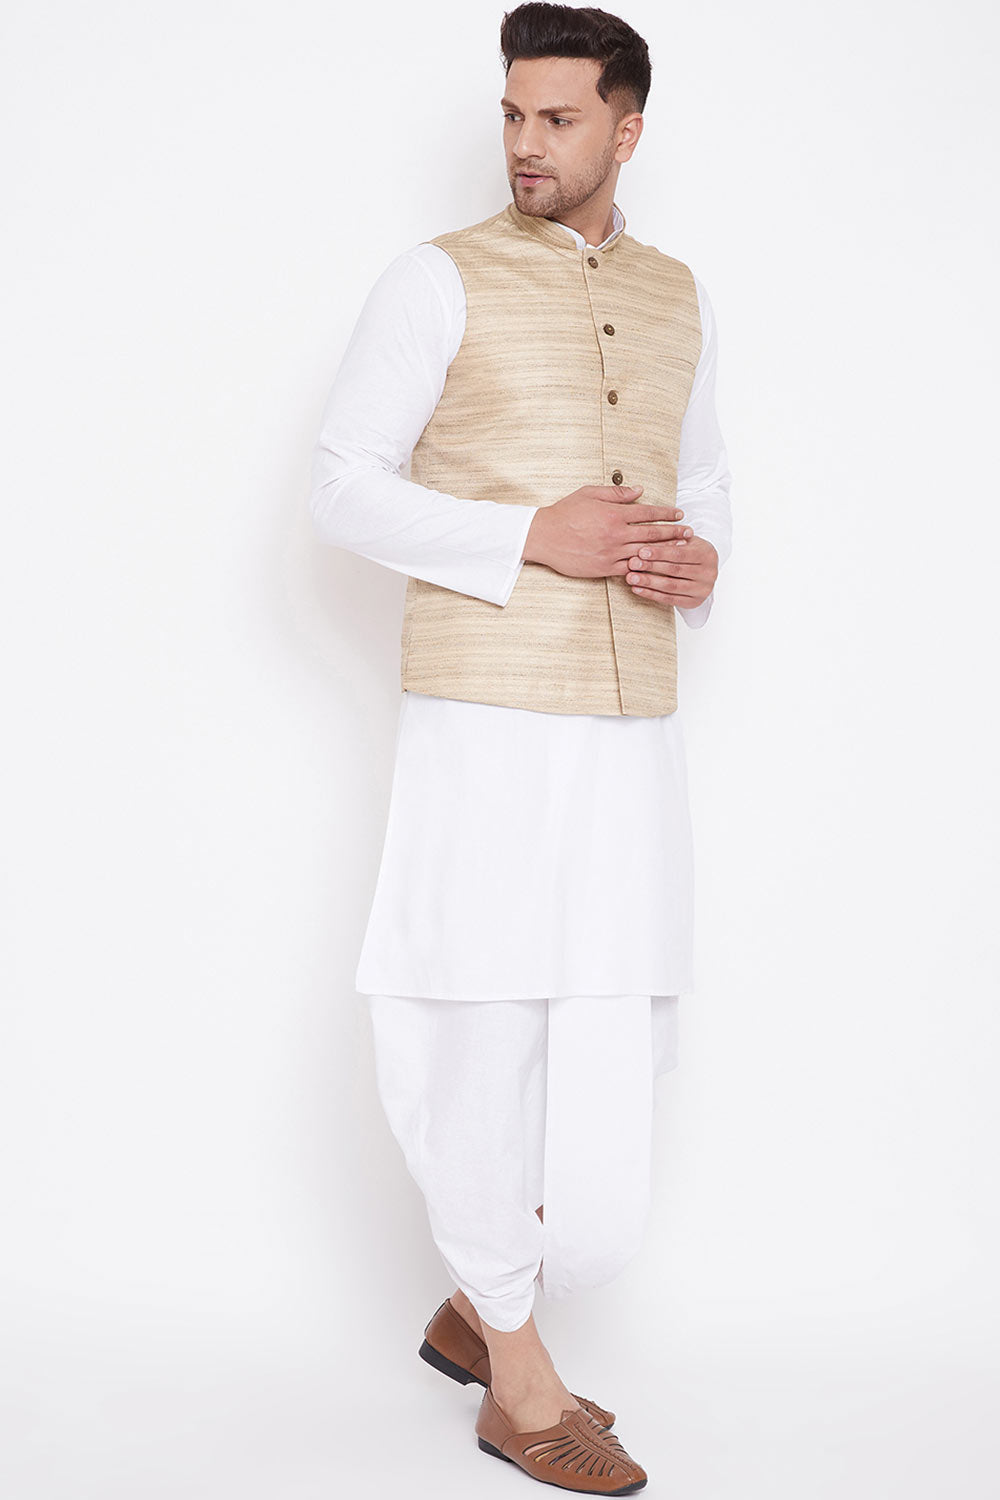 Buy Men's Kurta and Dhoti Set in White